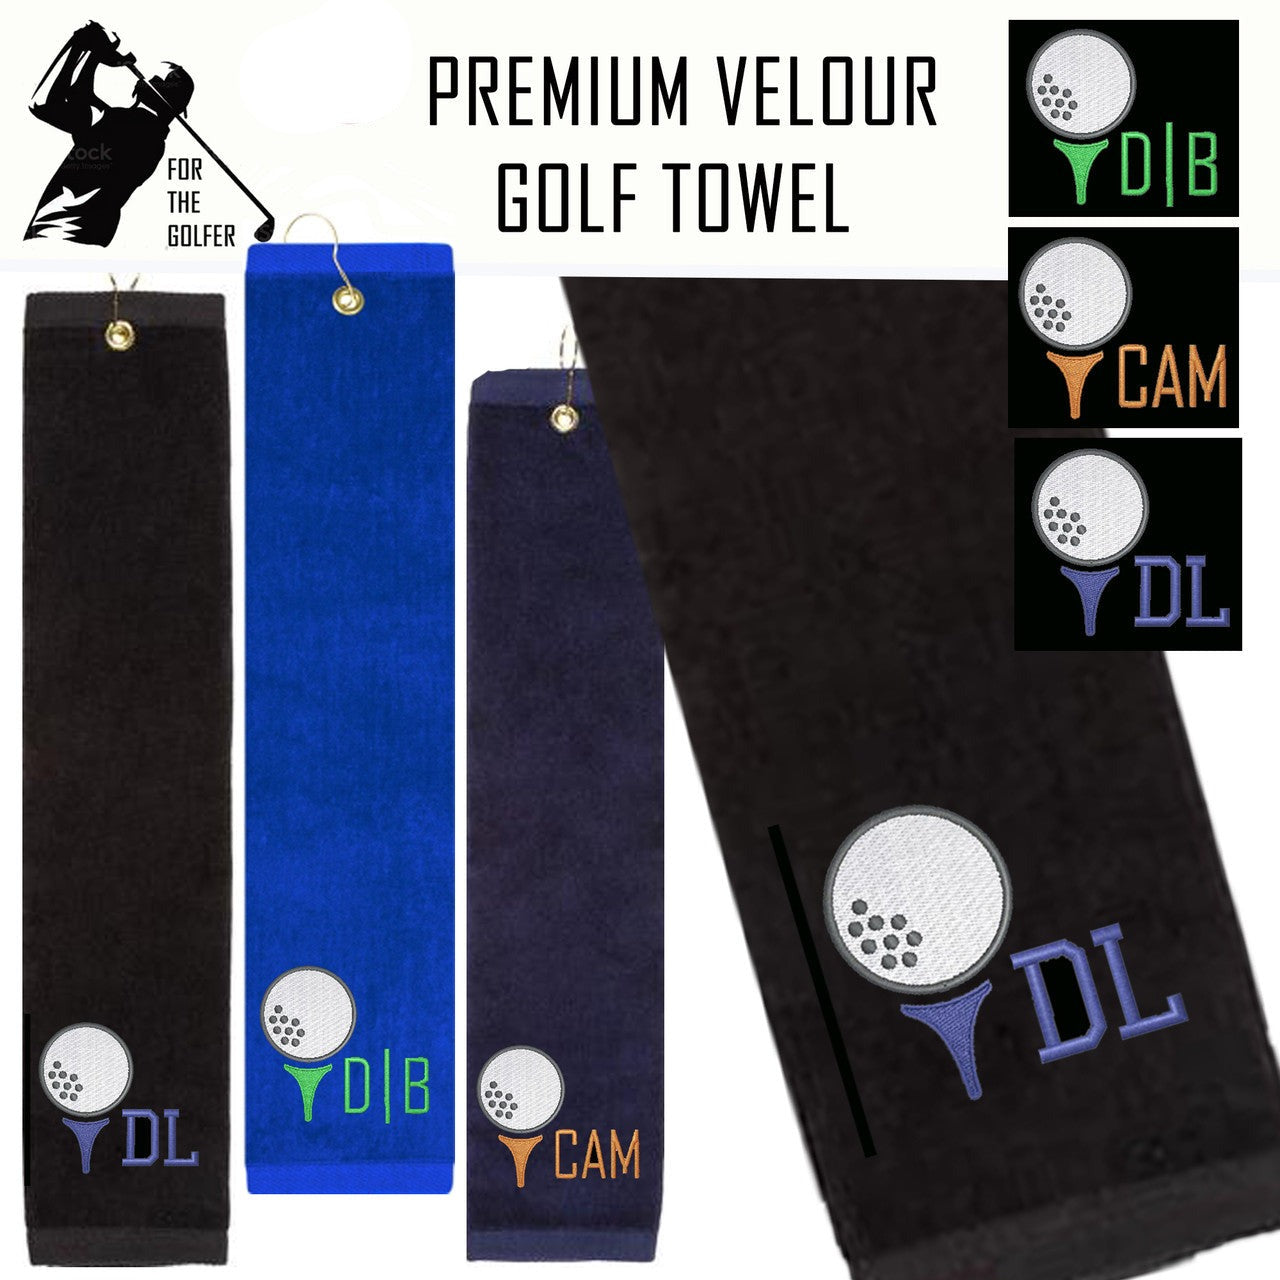 Premium Velour Golf Towel